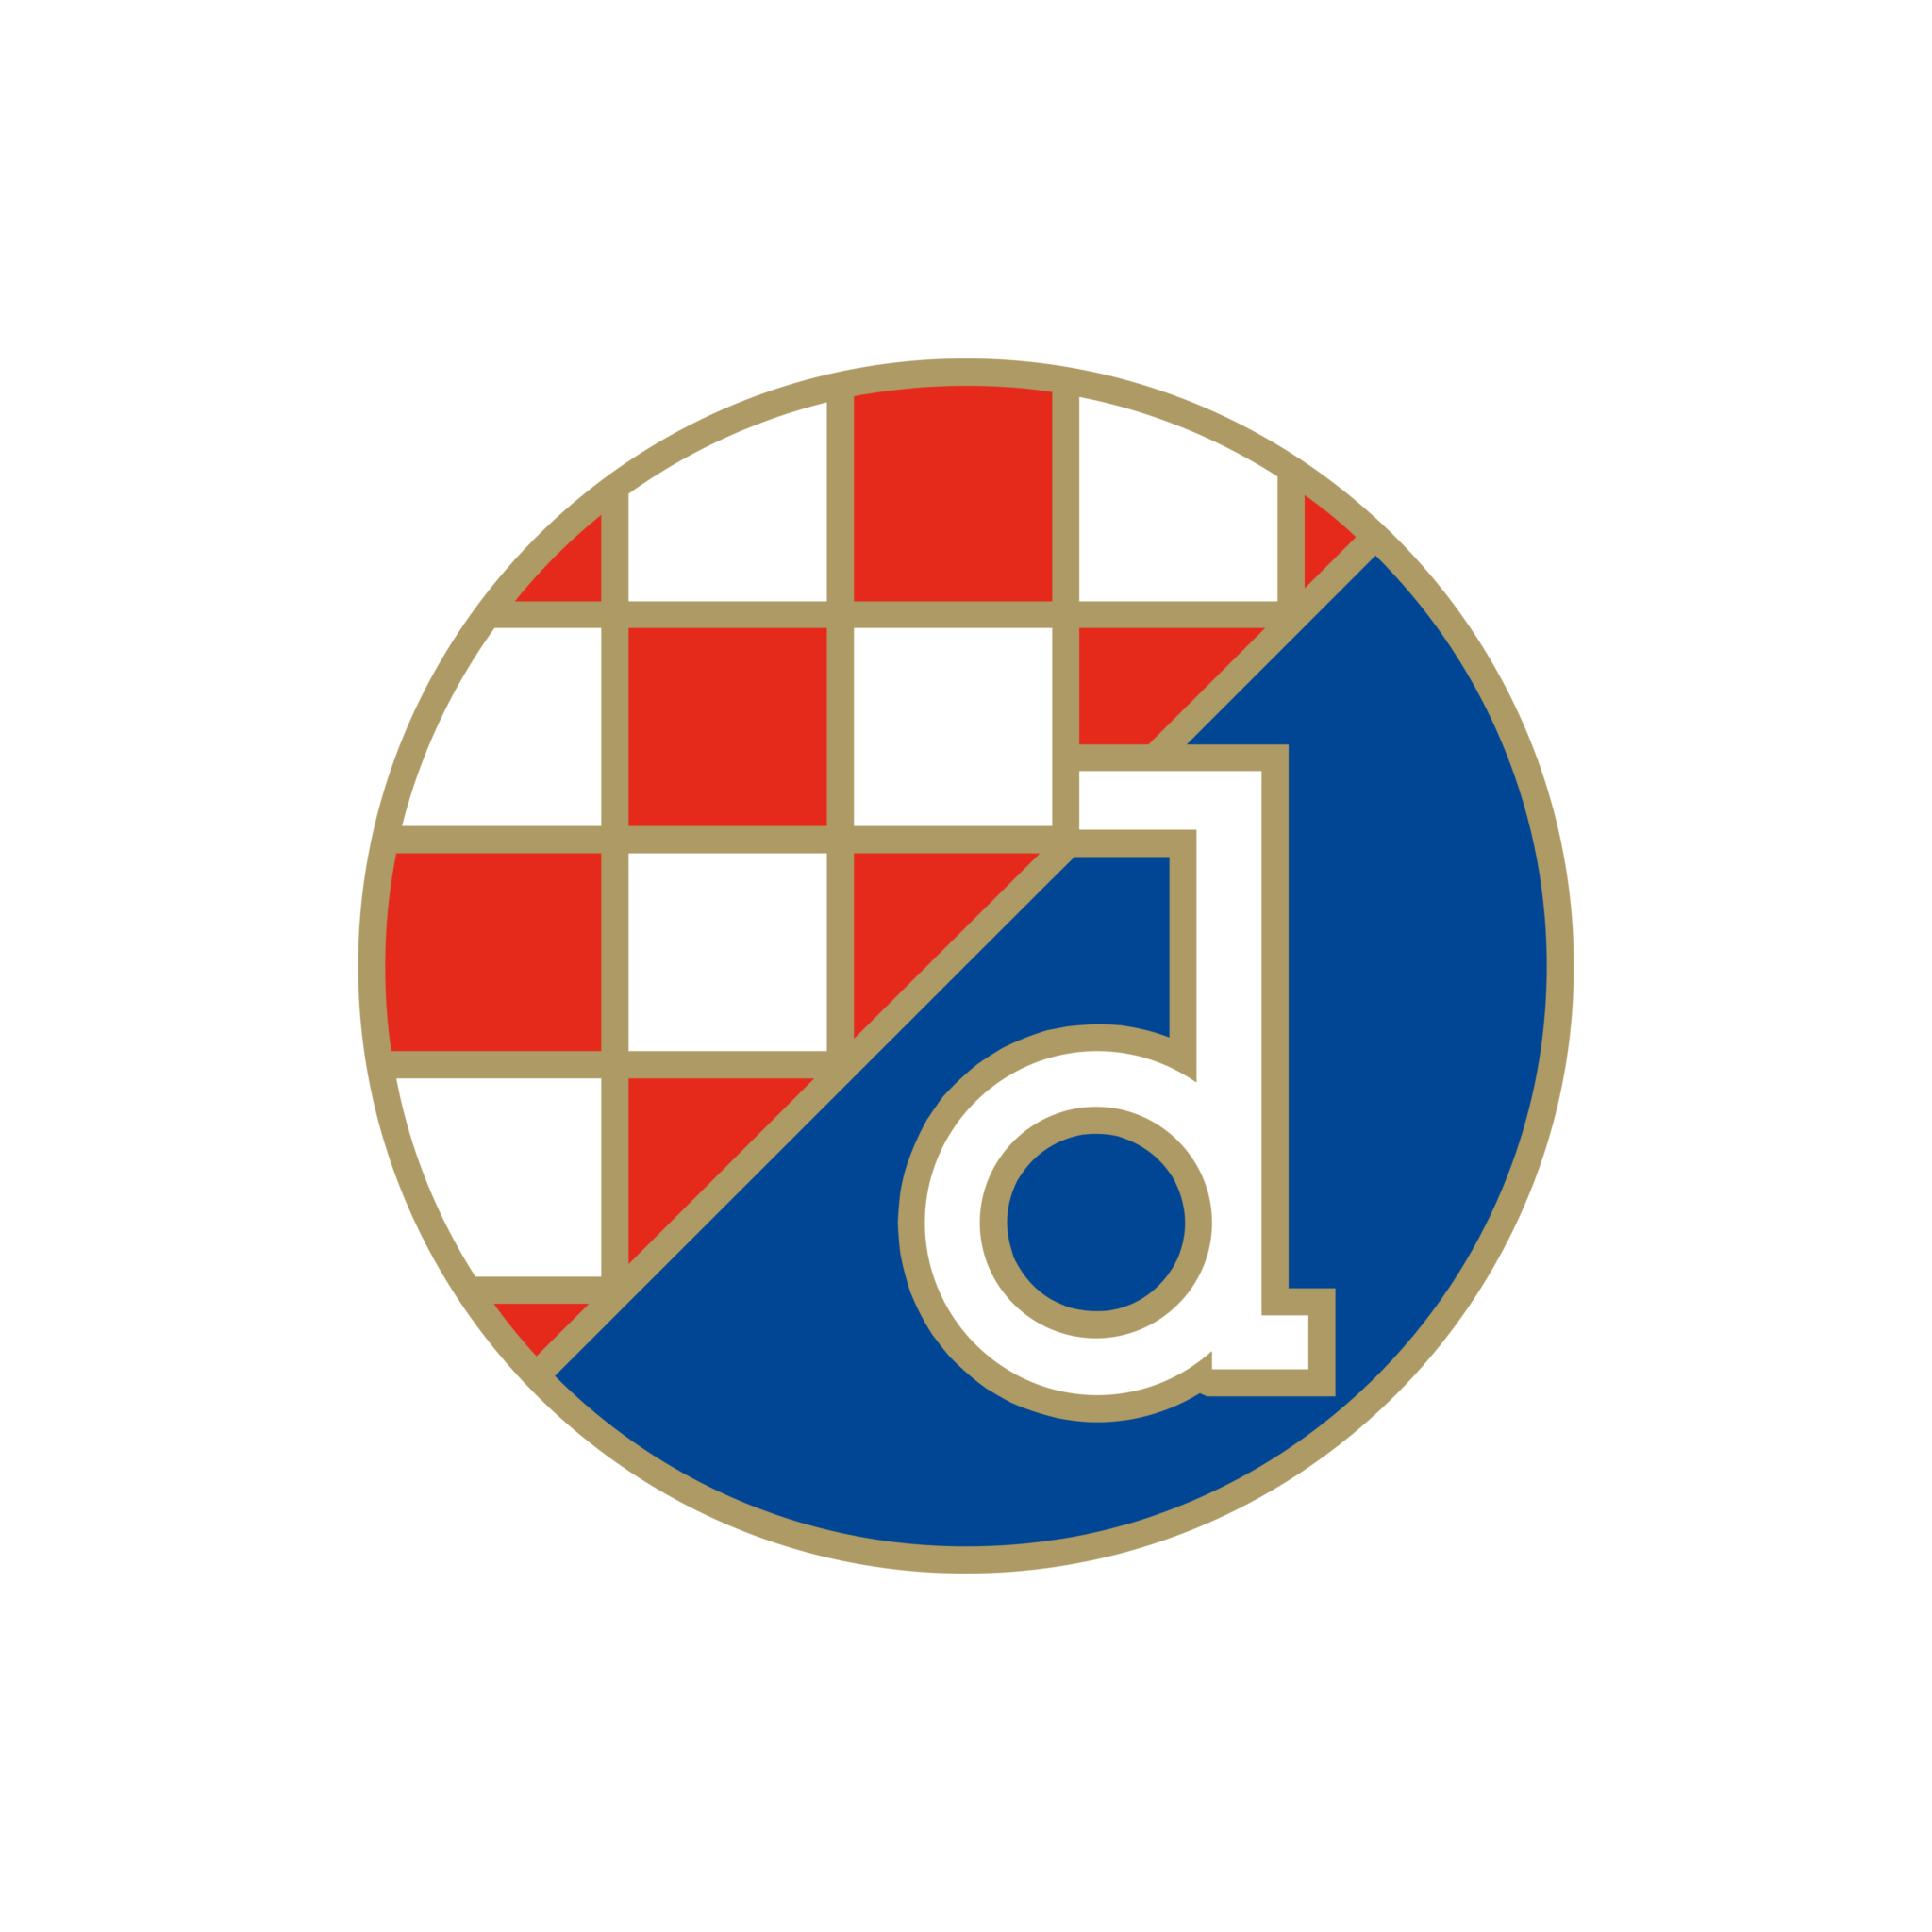 Dínamo Zagreb Logo – Escudo - PNG e Vetor - Download de Logo